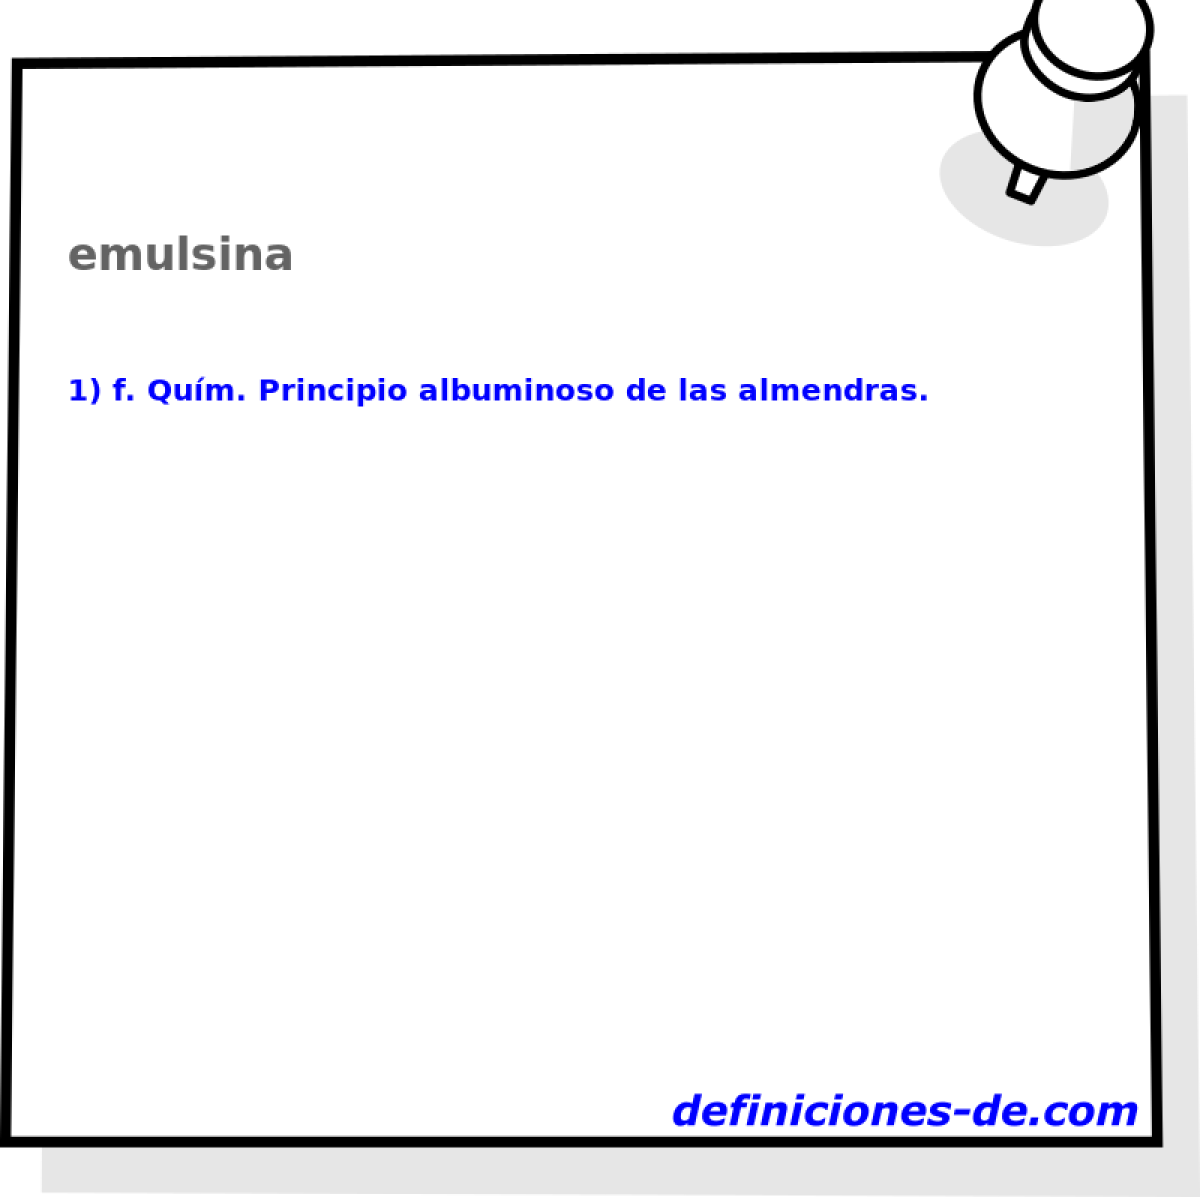 emulsina 